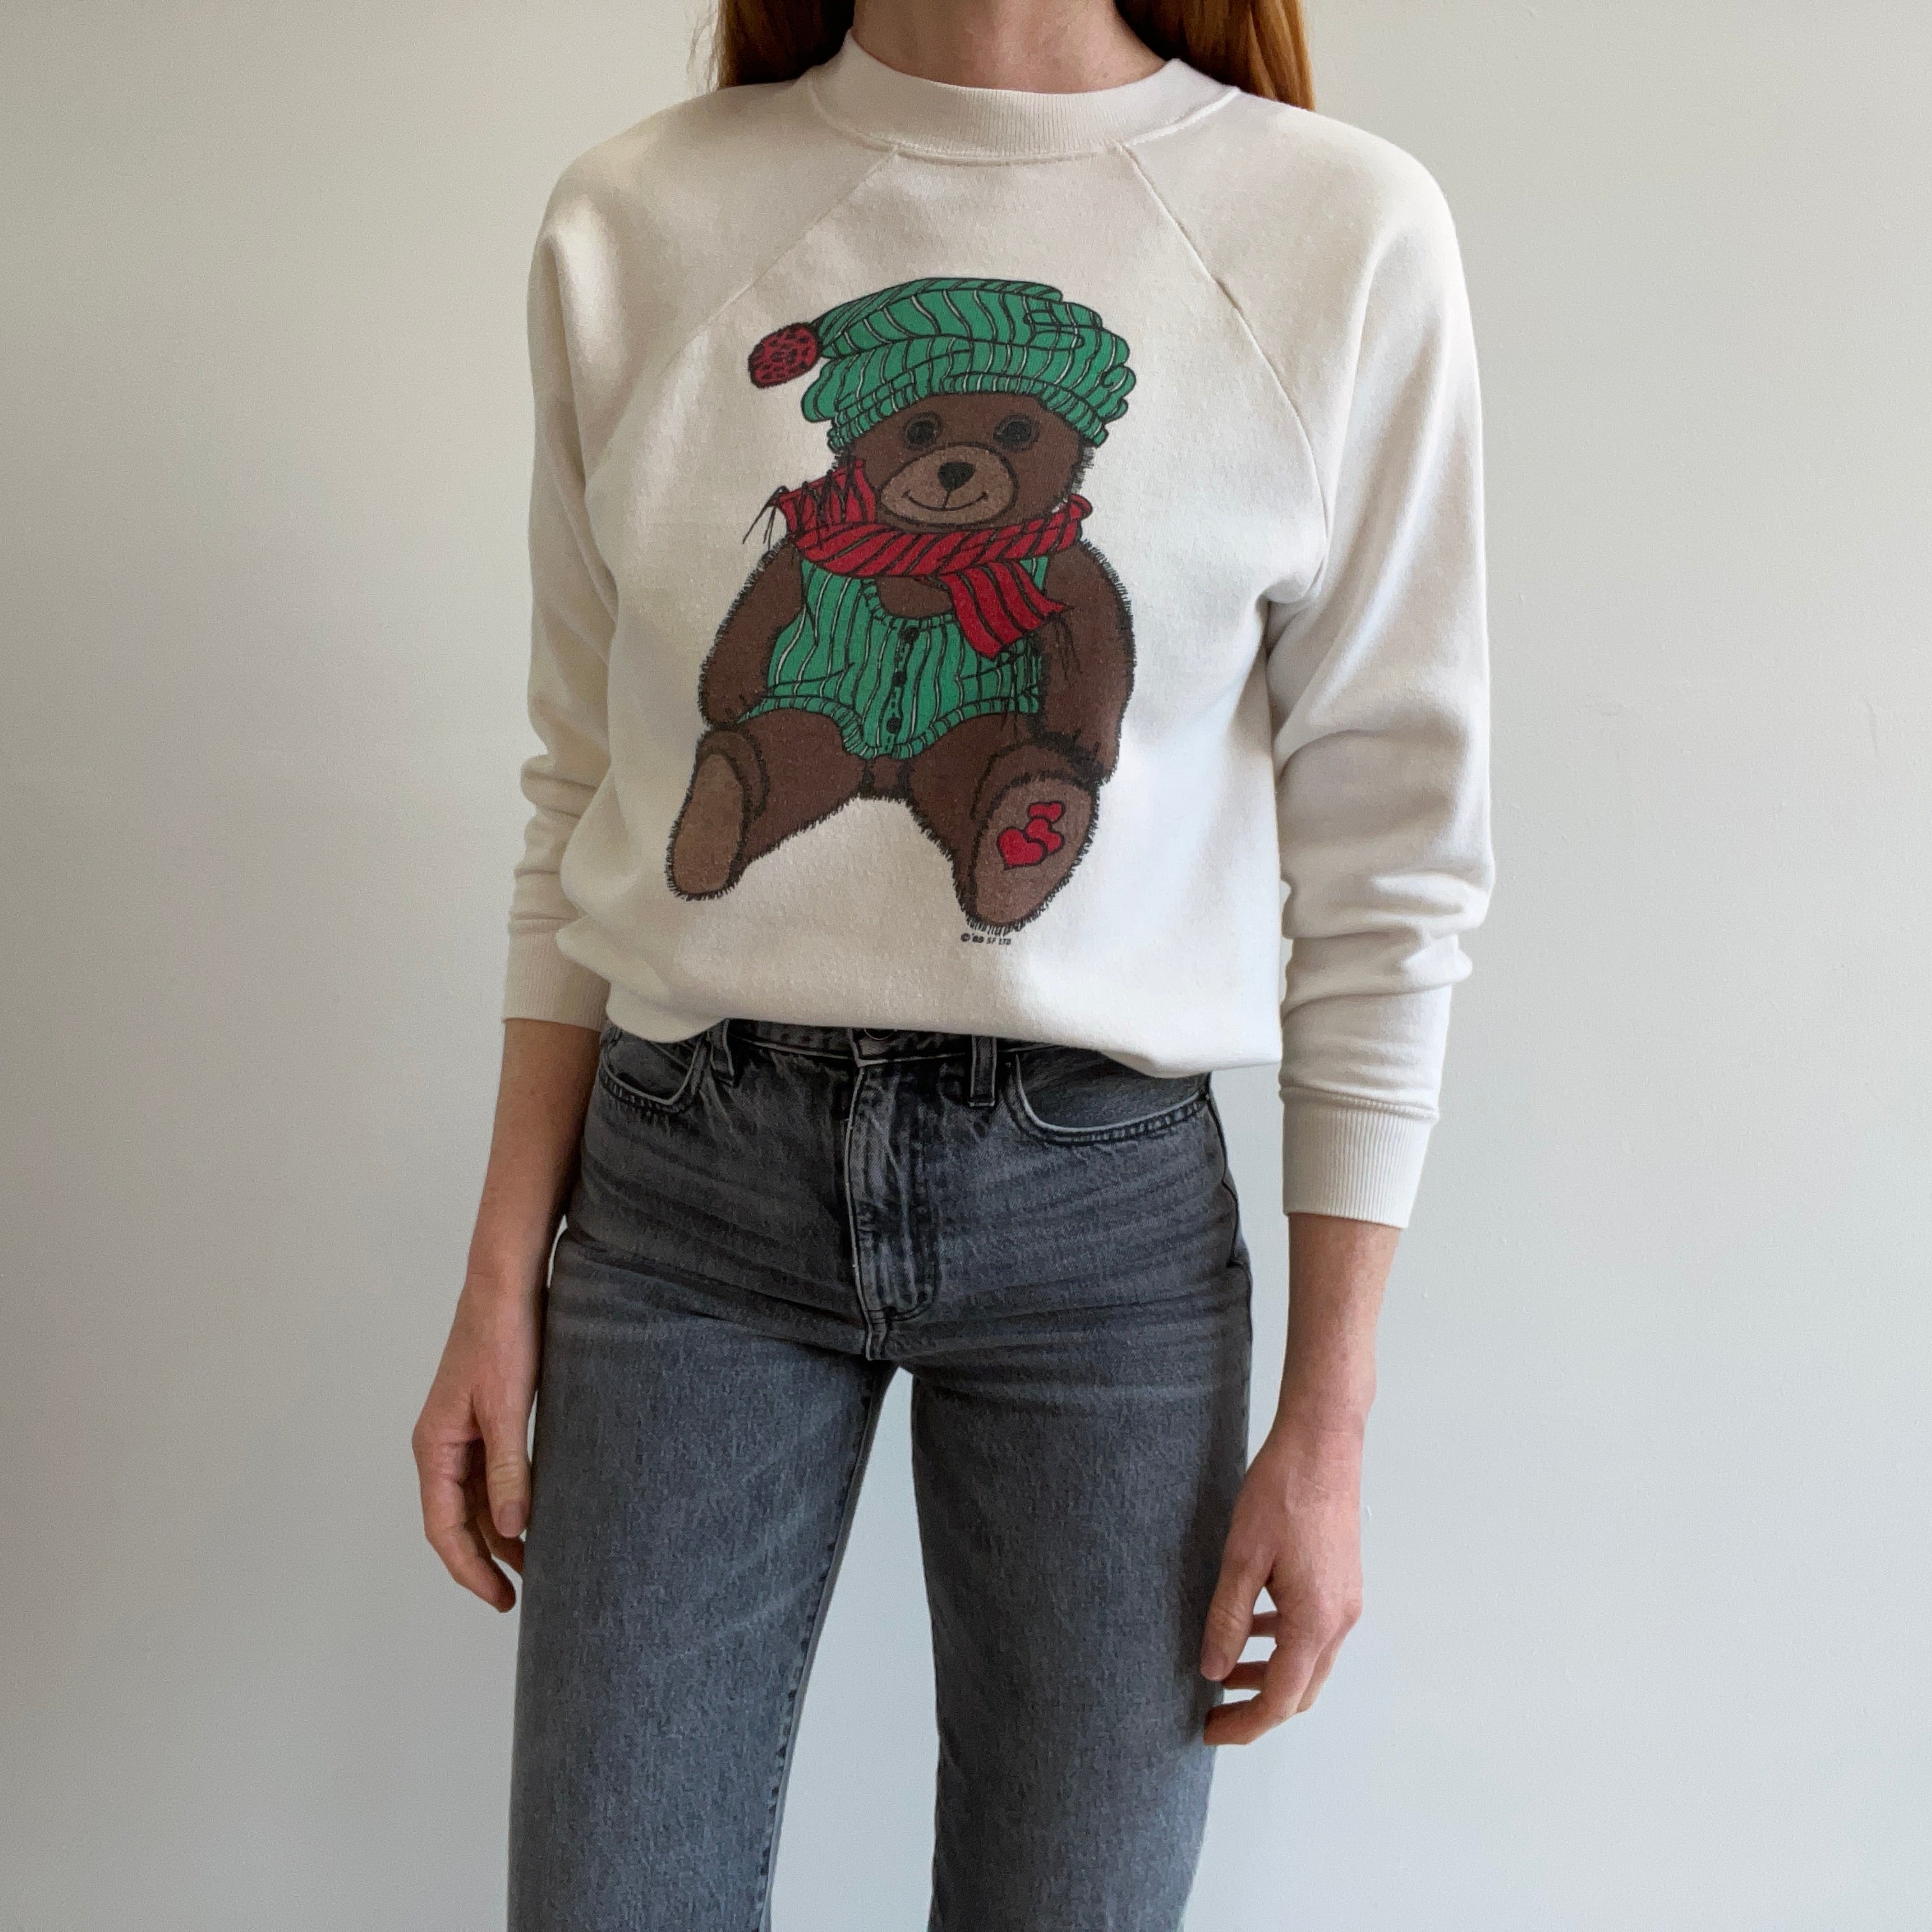 1985 Holiday Teddy Bear Sweatshirt - Awwwww